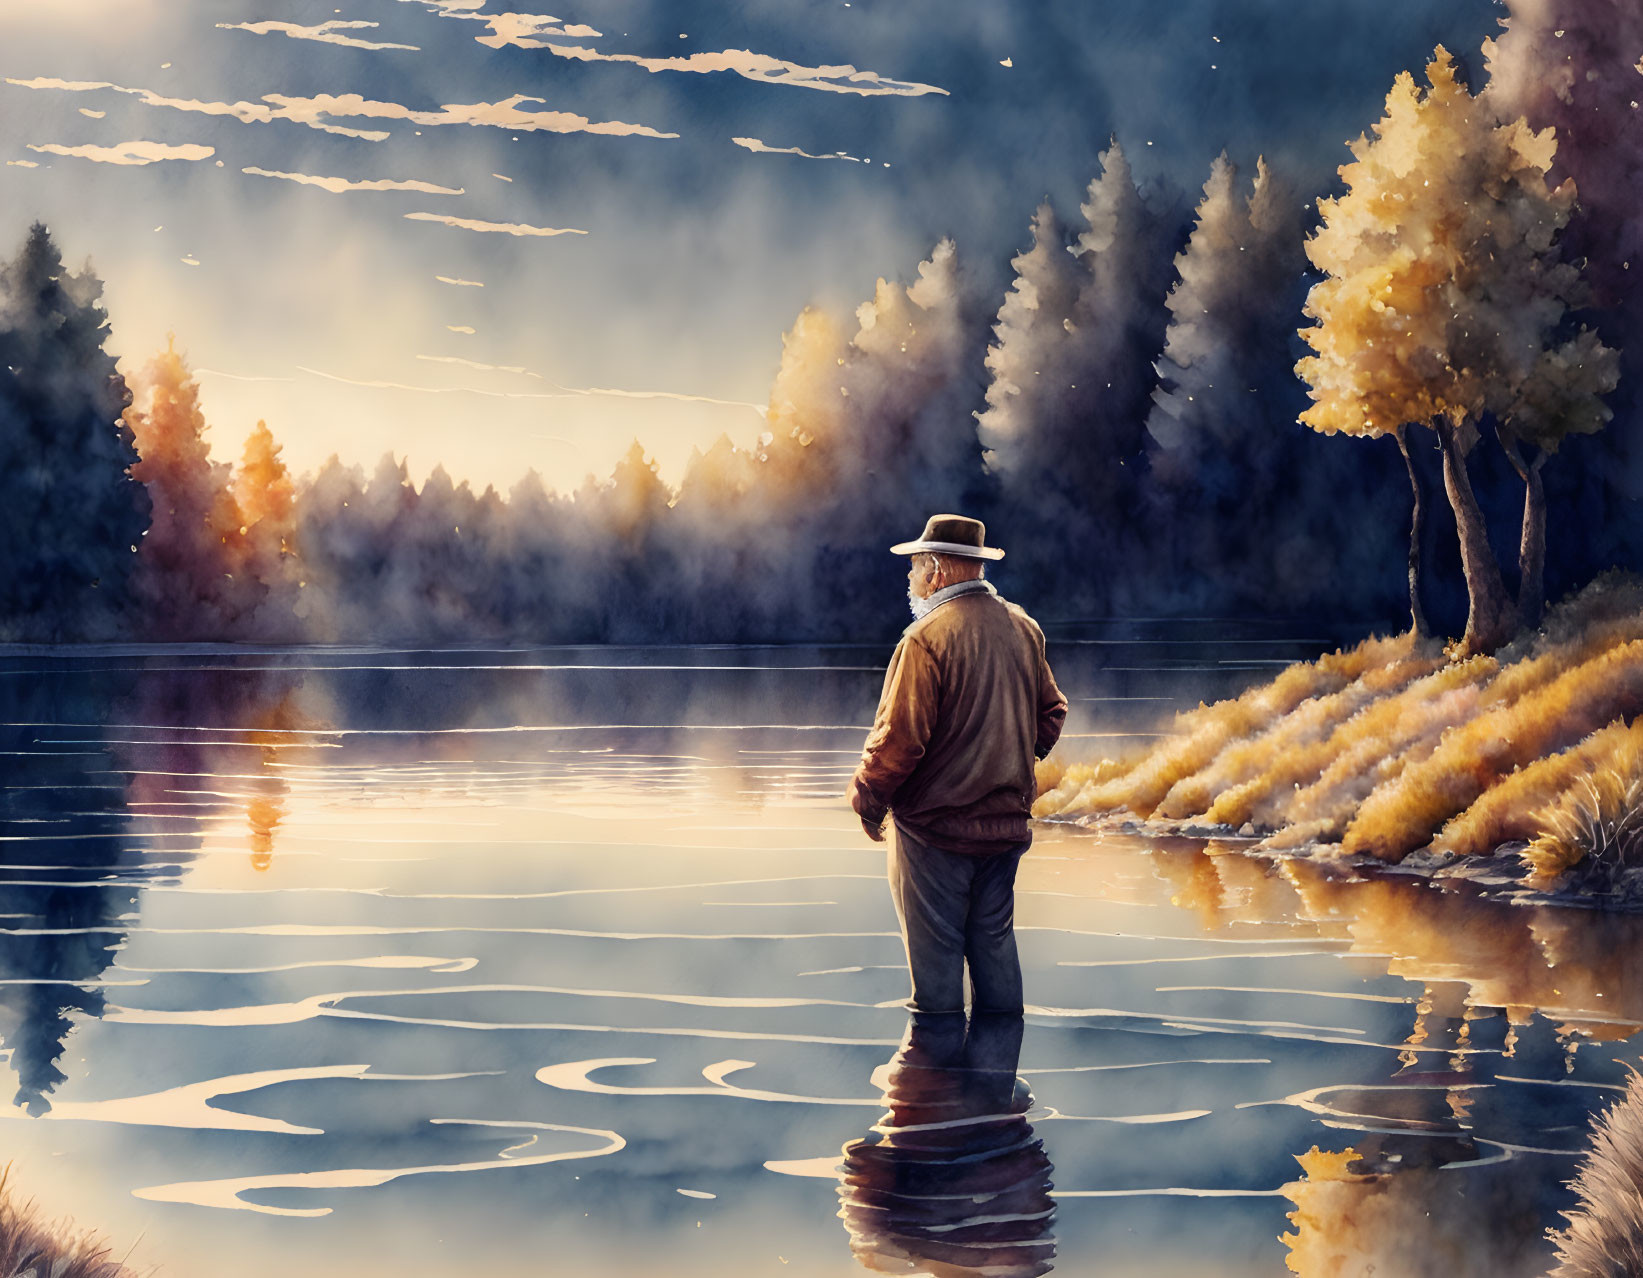 Old man Fish jumping, ripples, lake, reflection, a